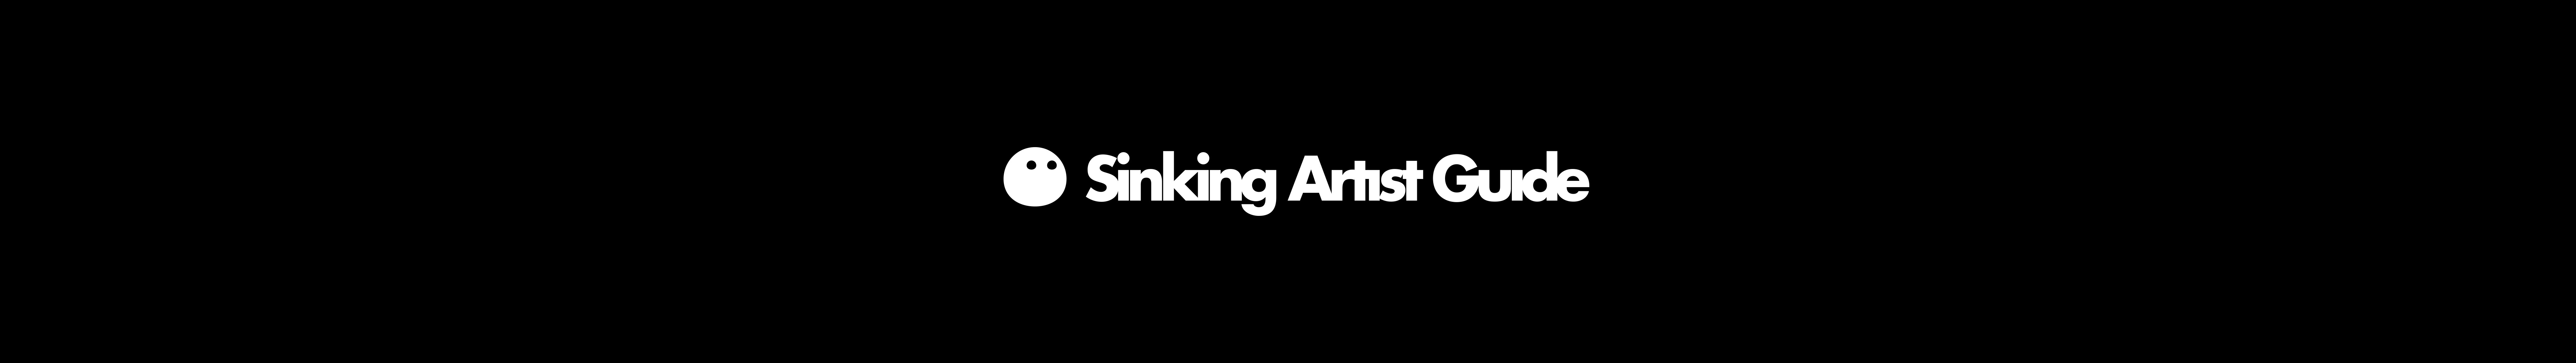 Sinking Artist Guide 插画师自救指南 님의 프로필 배너